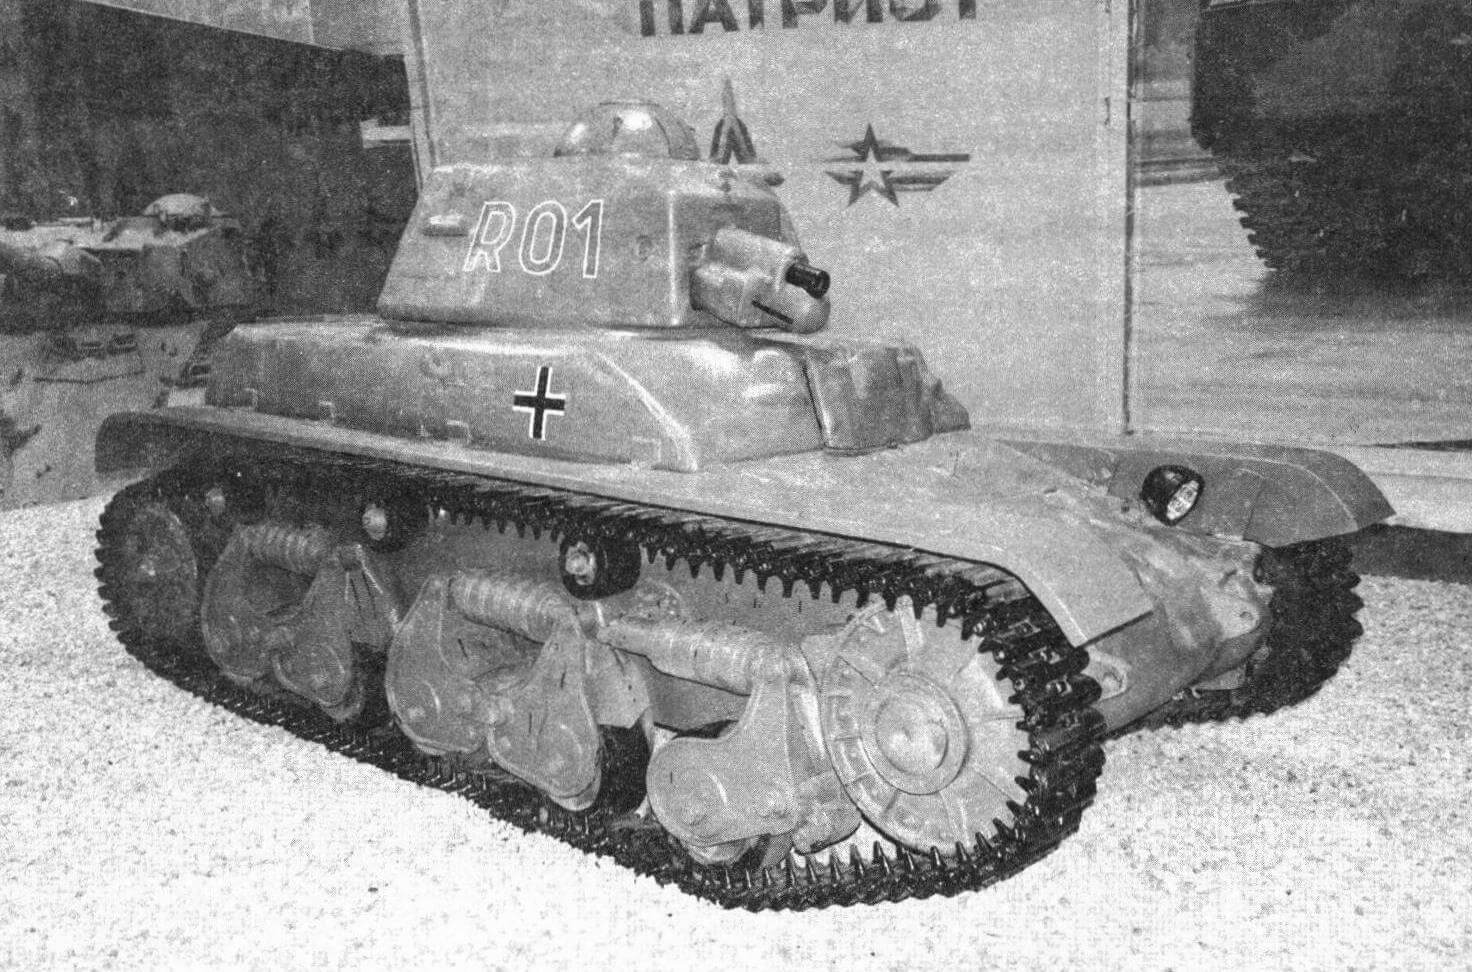 Танк R35 в «цветах» вермахта. ФГАУ ВППКиО ВС РФ «Патриот», музейный комплекс № 1, 2020 г.